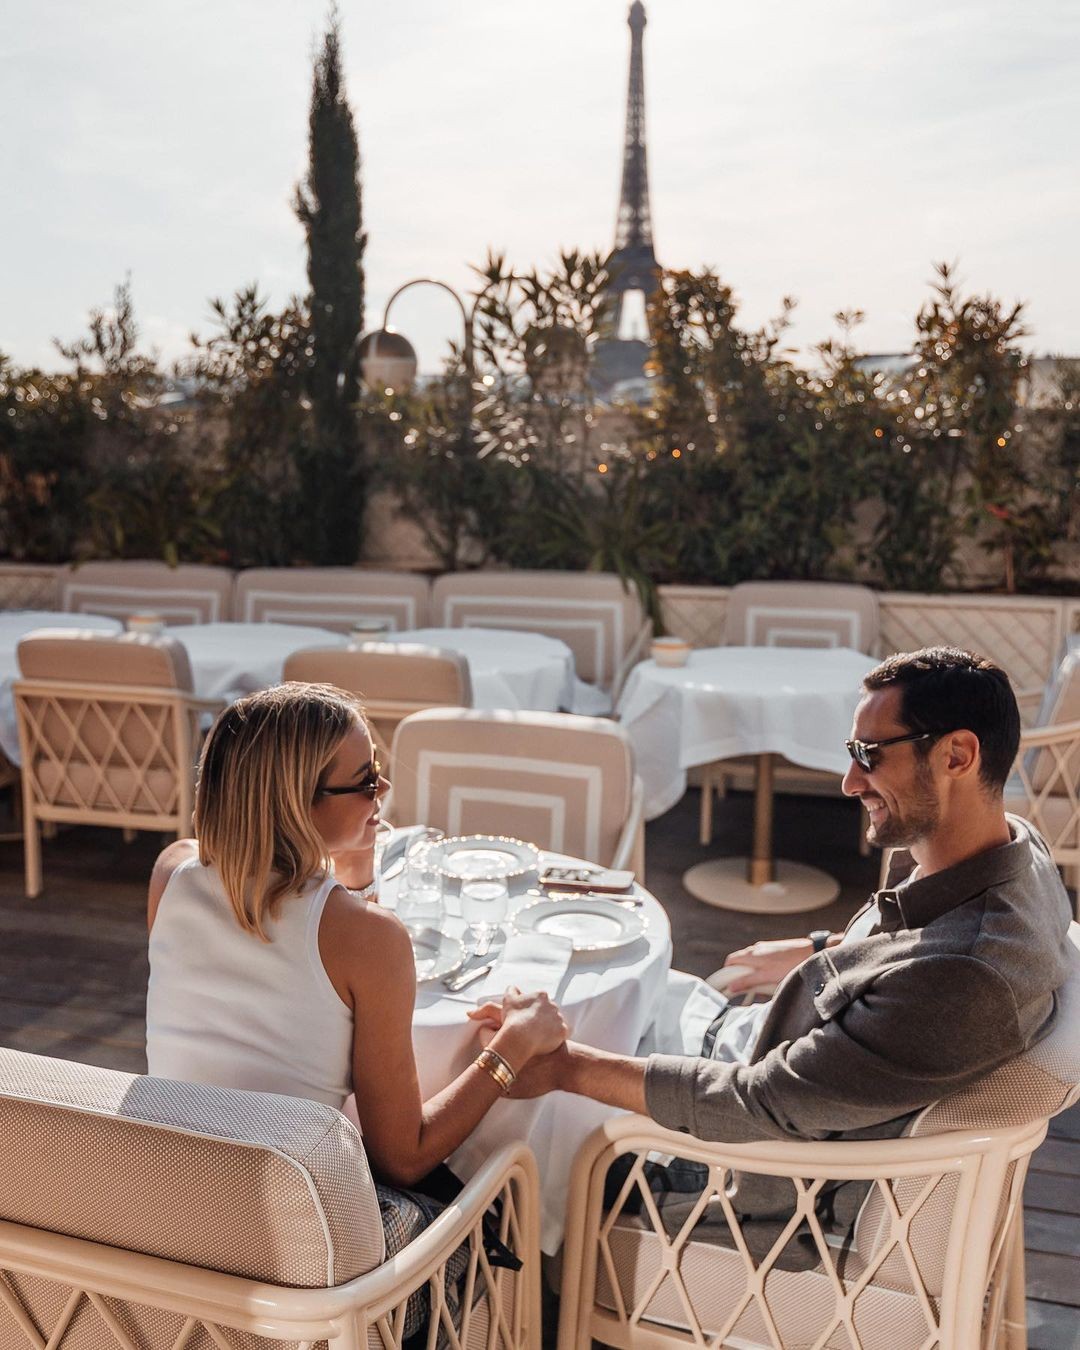 Alba Silva e Sergio Rico no Restaurante Gigi Paris - Foto reprodução / instagram